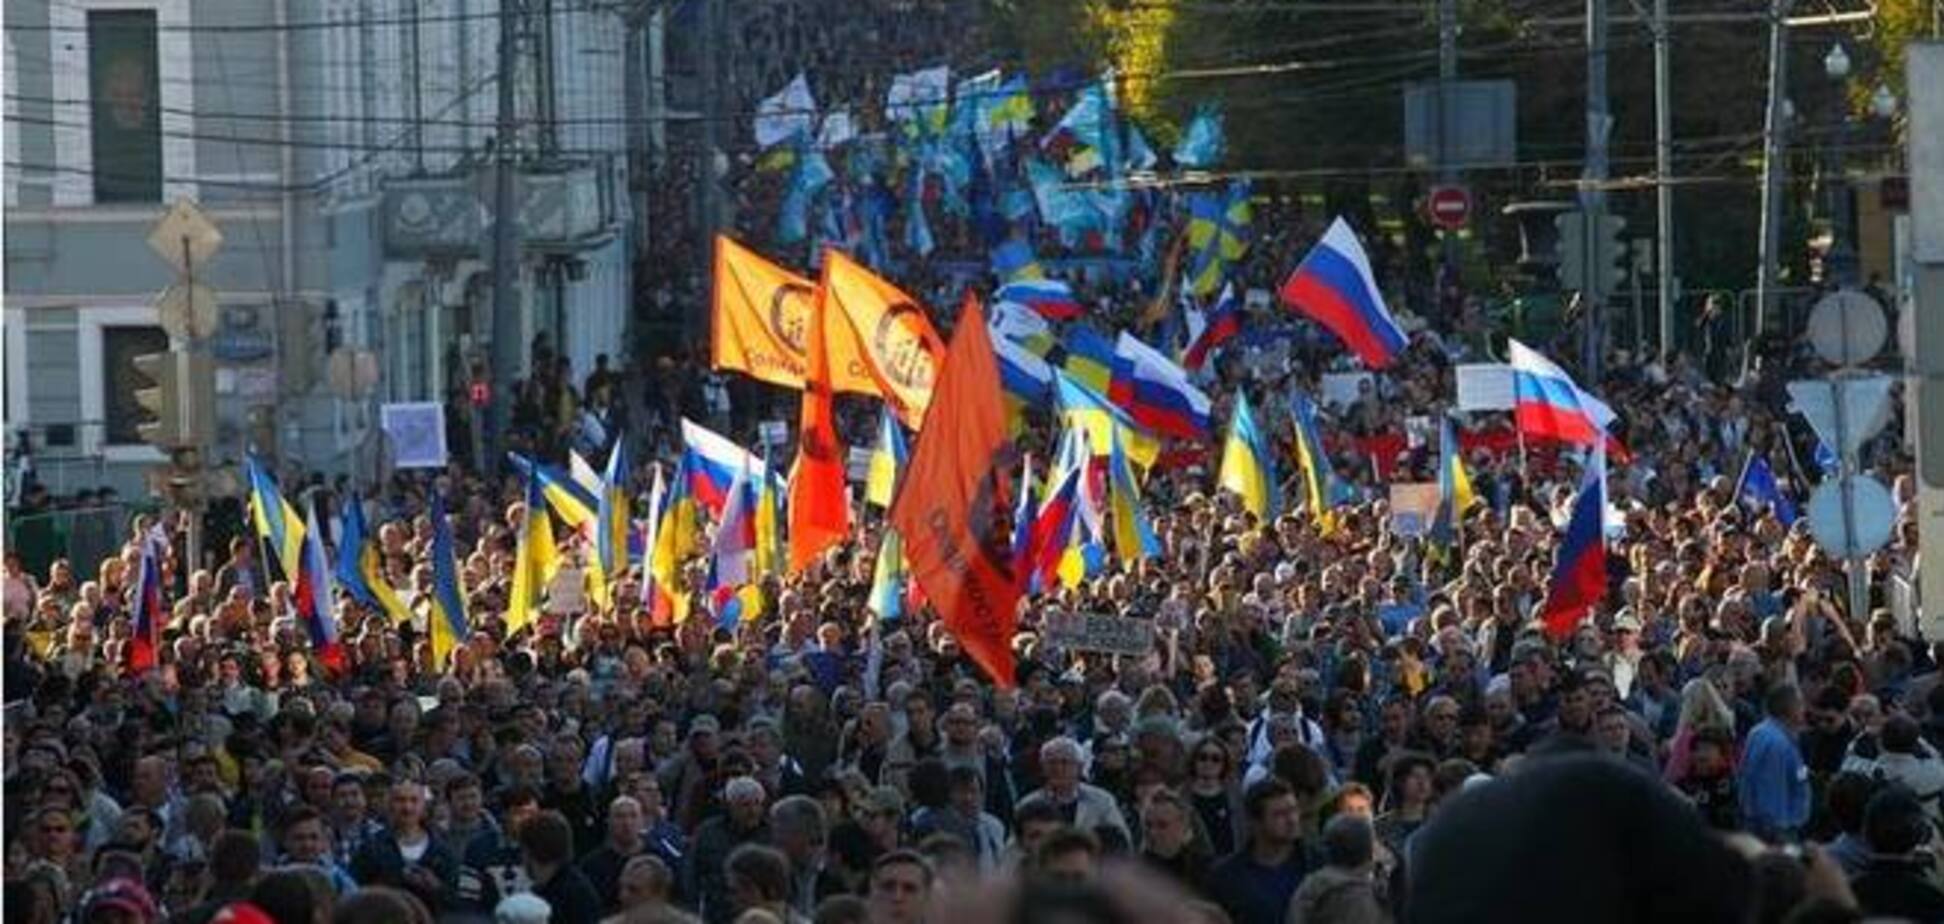 Немцов о 'Марше мира': путинское большинство оказалось городскими сумасшедшими